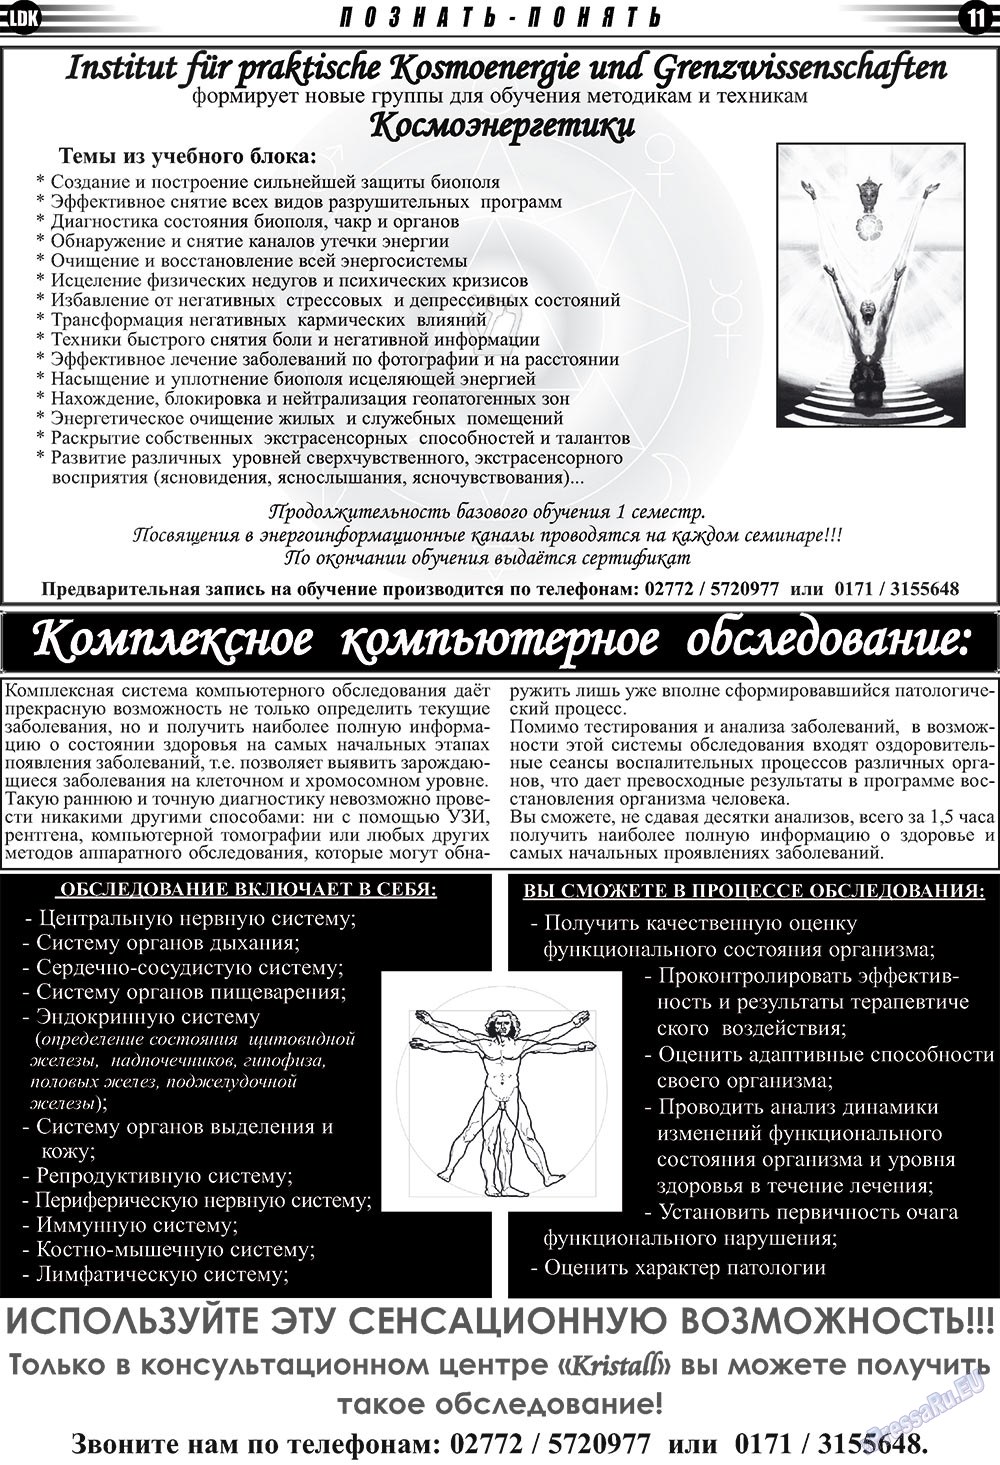 LDK по-русски (газета). 2009 год, номер 1, стр. 11